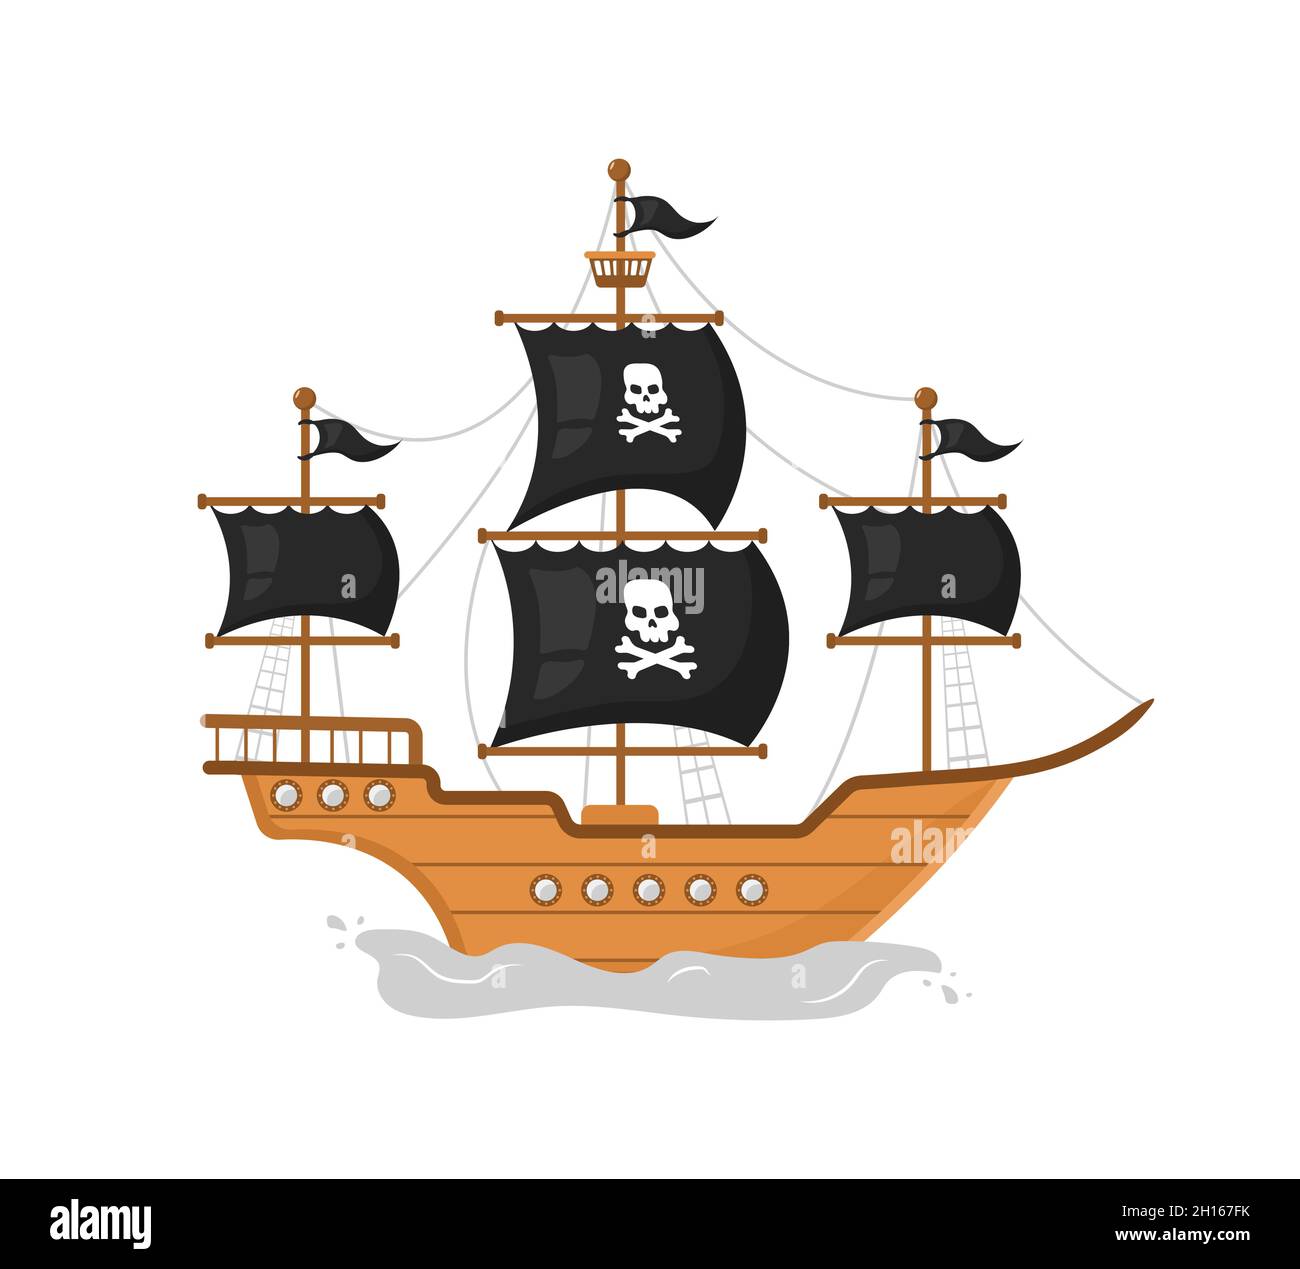 Bateau pirate en bois.Icône de piratage isolée sur fond blanc.Illustration vectorielle de style dessin animé plat Illustration de Vecteur